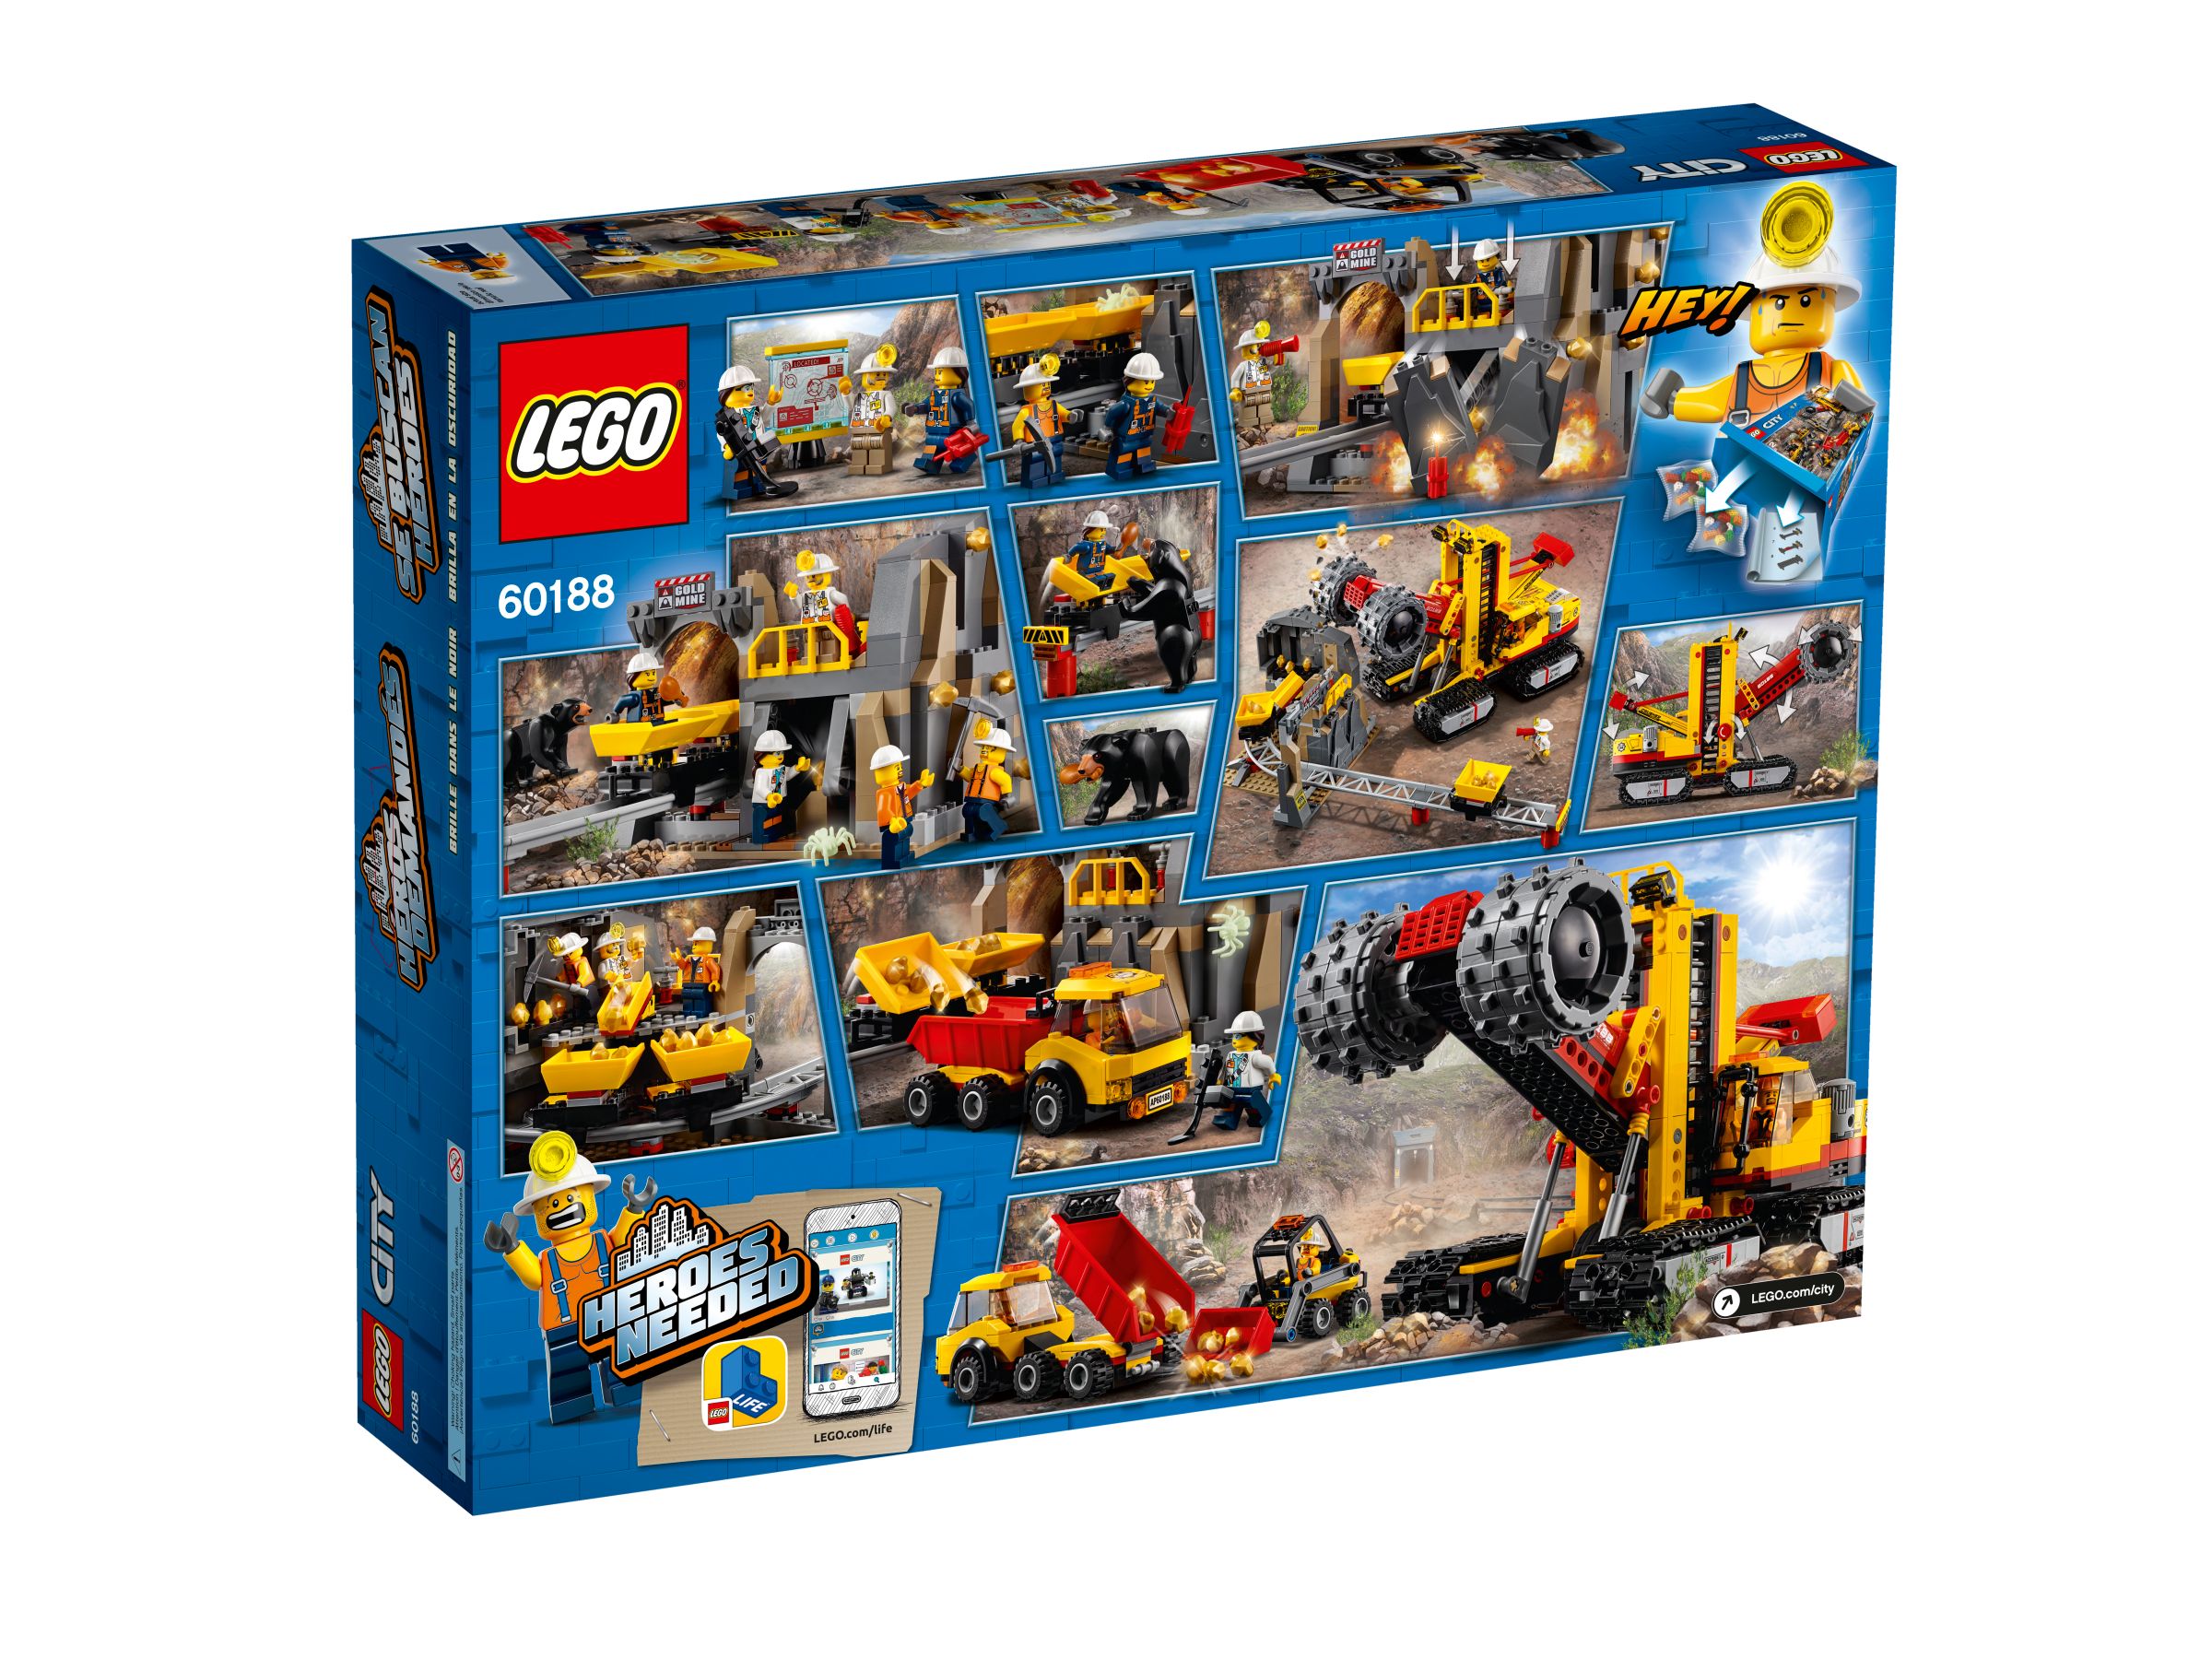 LEGO City 60188 Bergbauprofis an der Abbaustätte LEGO_60188_alt2.jpg